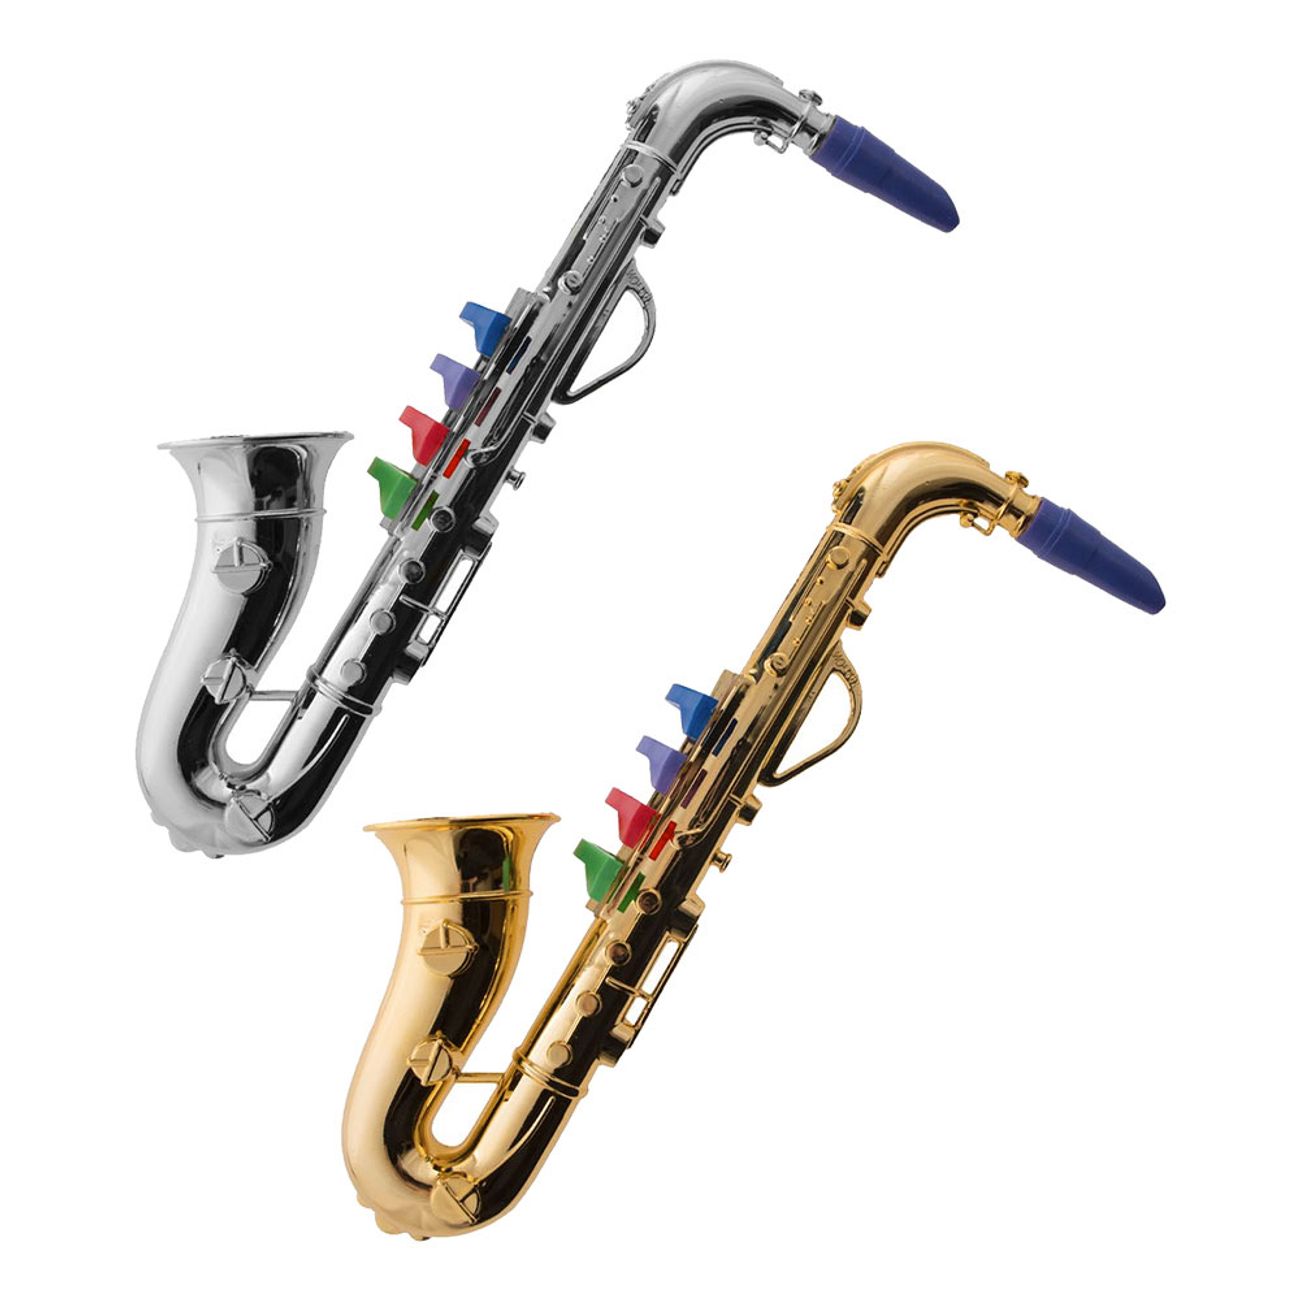 saxofon-leksaksinstrument-1